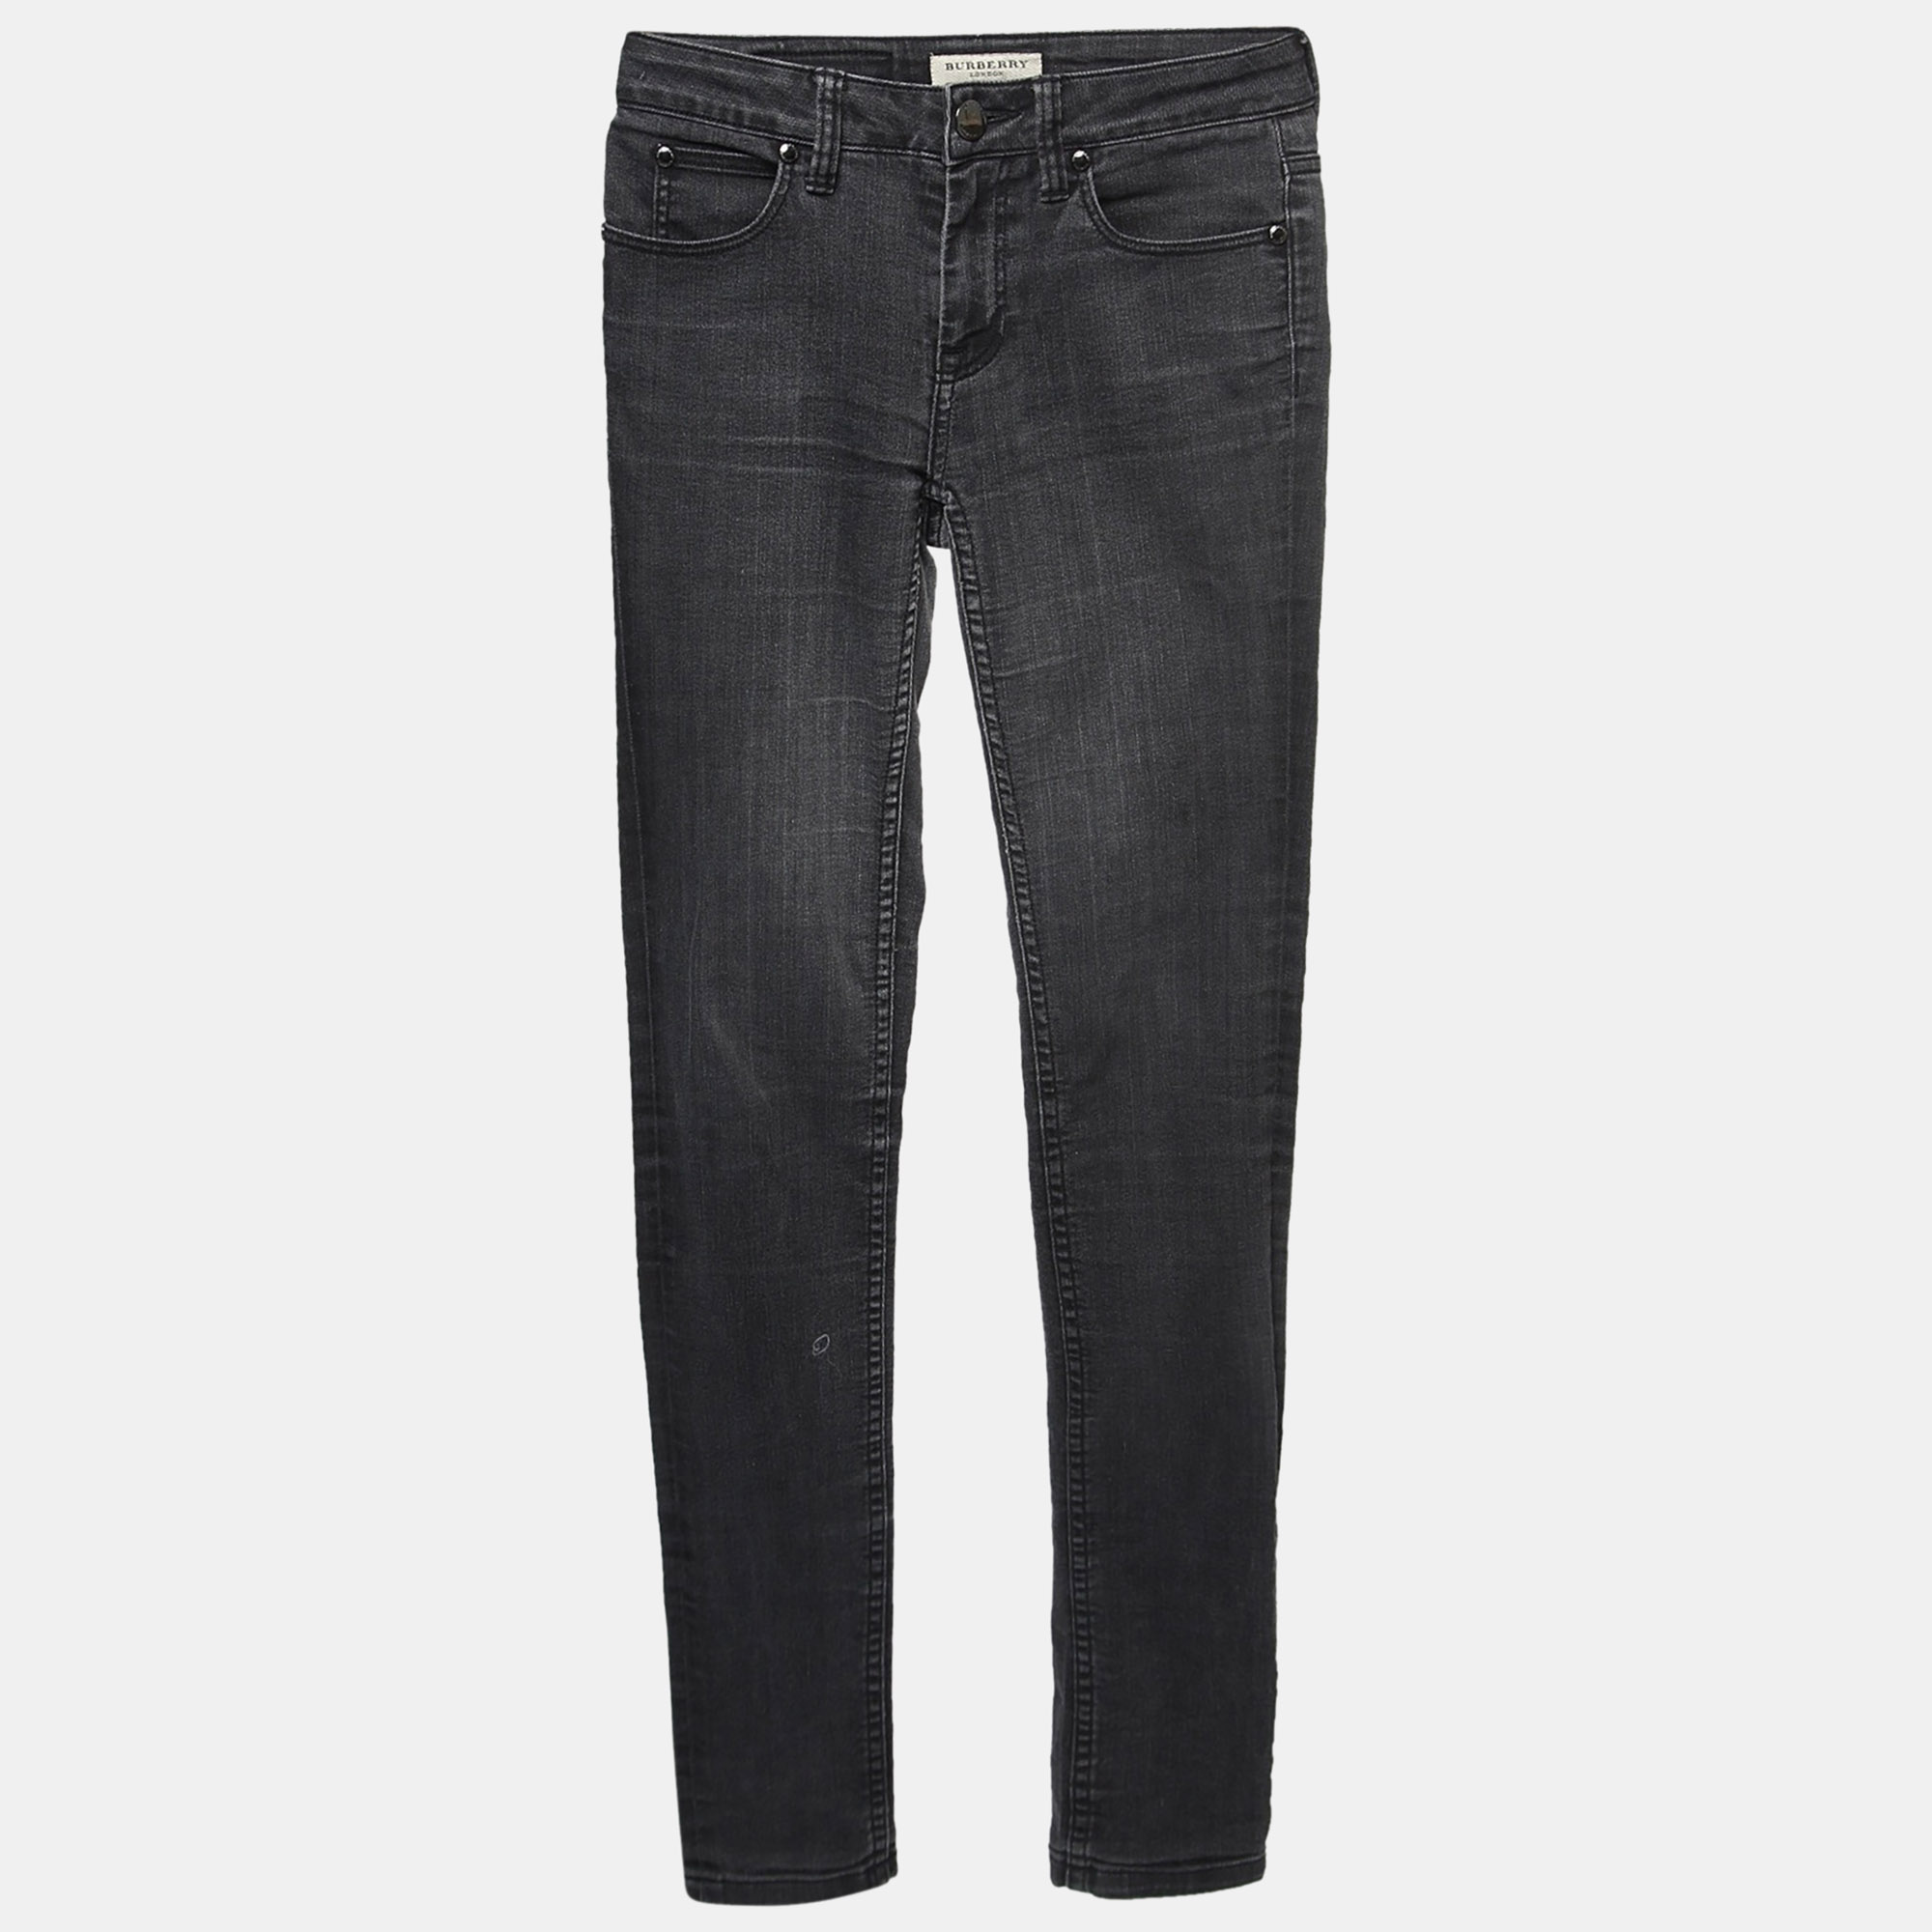 

Burberry London Charcoal Grey Denim Skinny Jeans  Waist 25